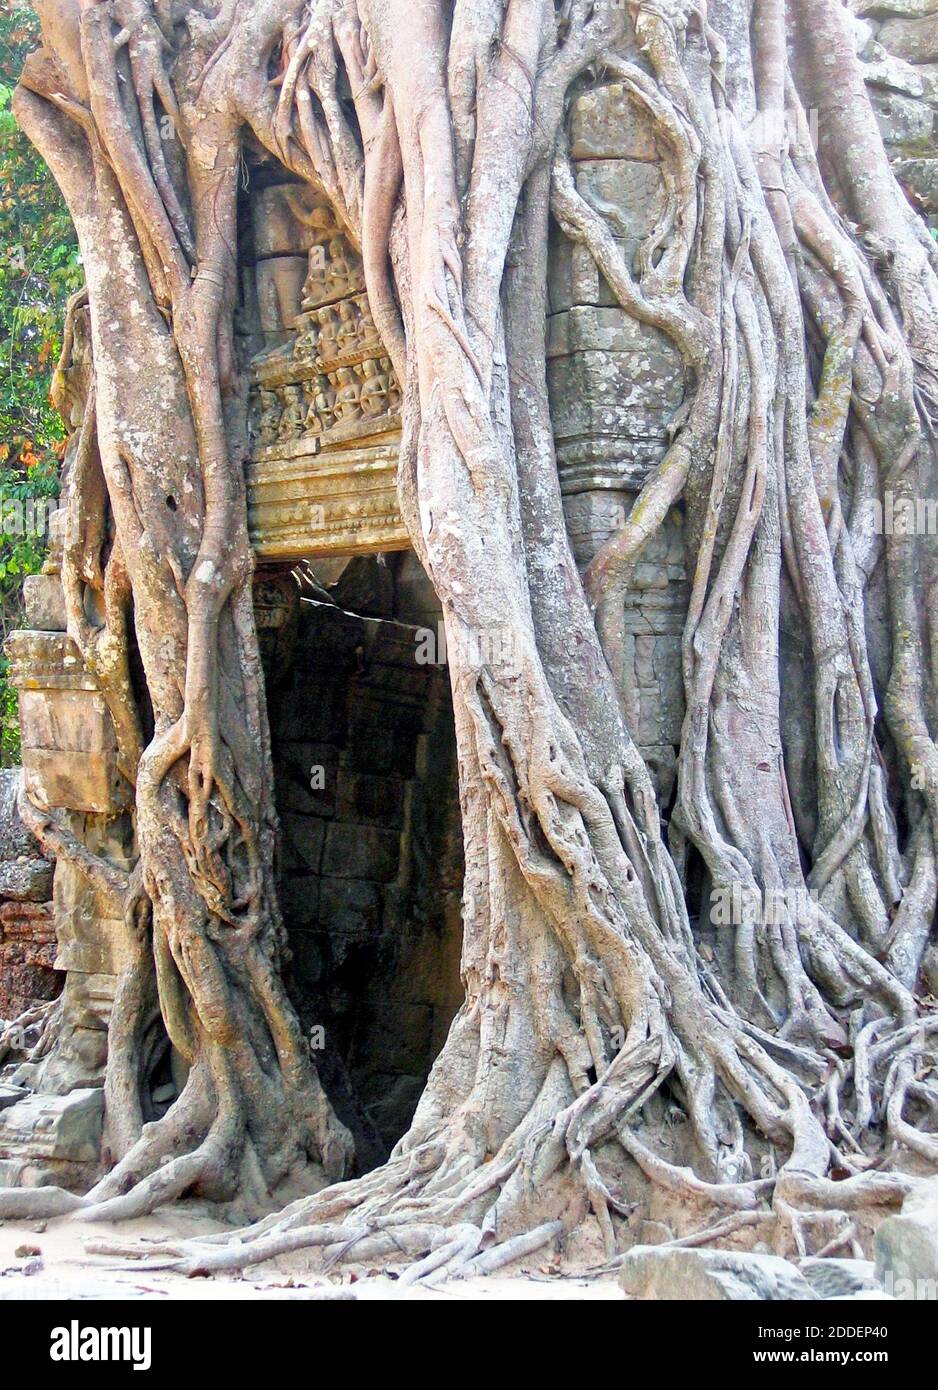 En 2005, los higos angulares en ta Prohm toman el control de una pasarela en el bajorrelieve adornado antiguo templo. Los higos Strangler, conocidos como ficus estrangulosa, se pueden encontrar a lo largo de ta Prohm y otros lugares antiguos de Angkor. Estas antiguas ruinas son testimonio de la cultura y arquitectura Khmer que fue una zona próspera que abarca más de 400 acres. Fue abandonado en 1431, redescubierto en la década de 1990, y es un próspero sitio turístico en la zona de Siem Reap, Camboya. Foto de stock